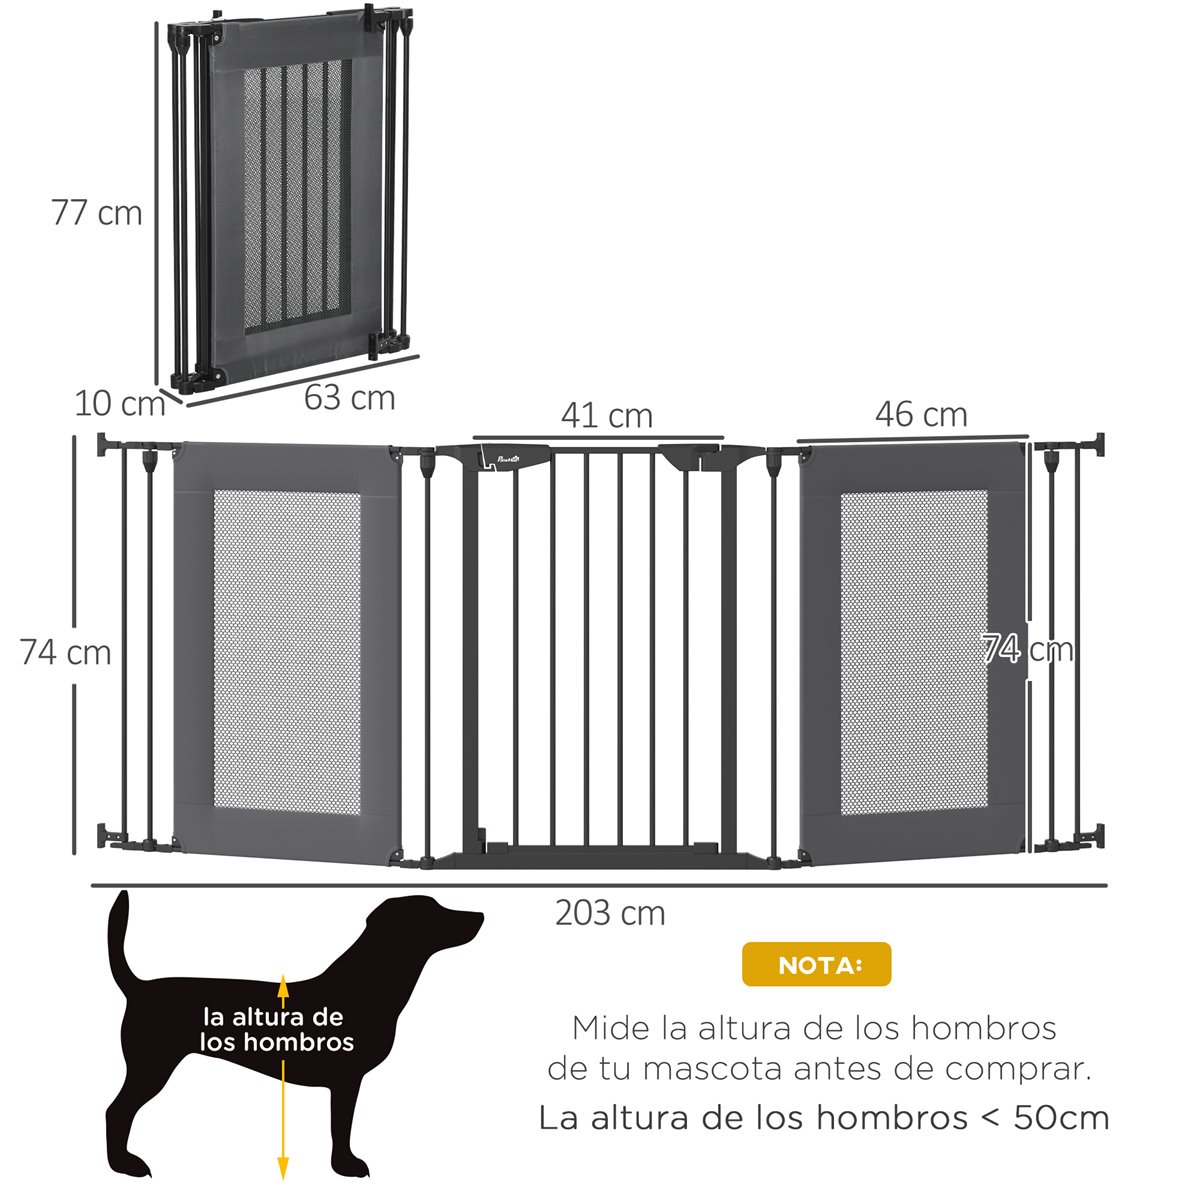 PawHut barrera de seguridad extensible para escaleras gris para perros